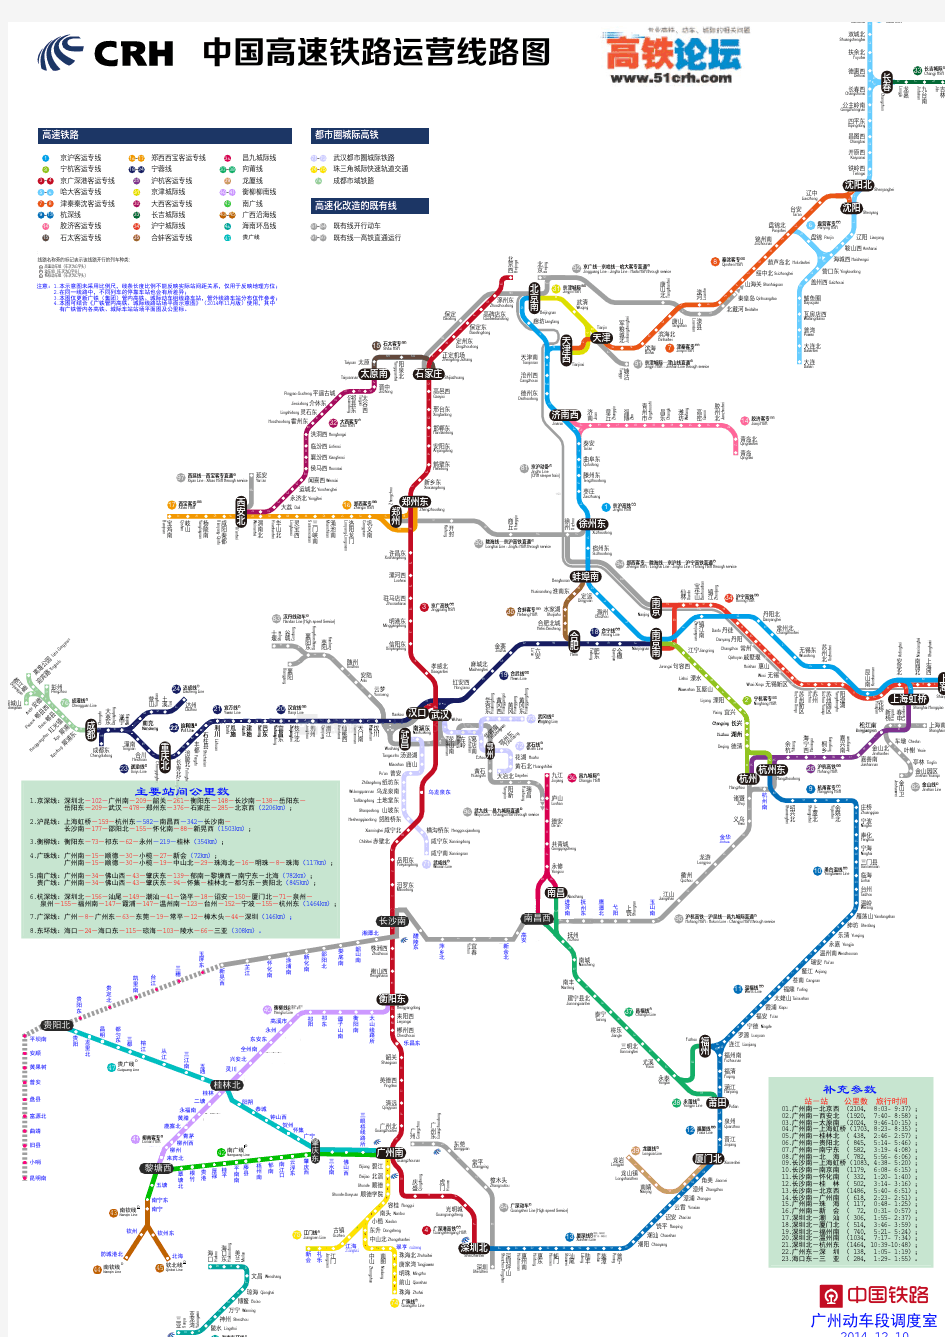 中国高铁运营线路示意图-20141210版.已更新v2.4